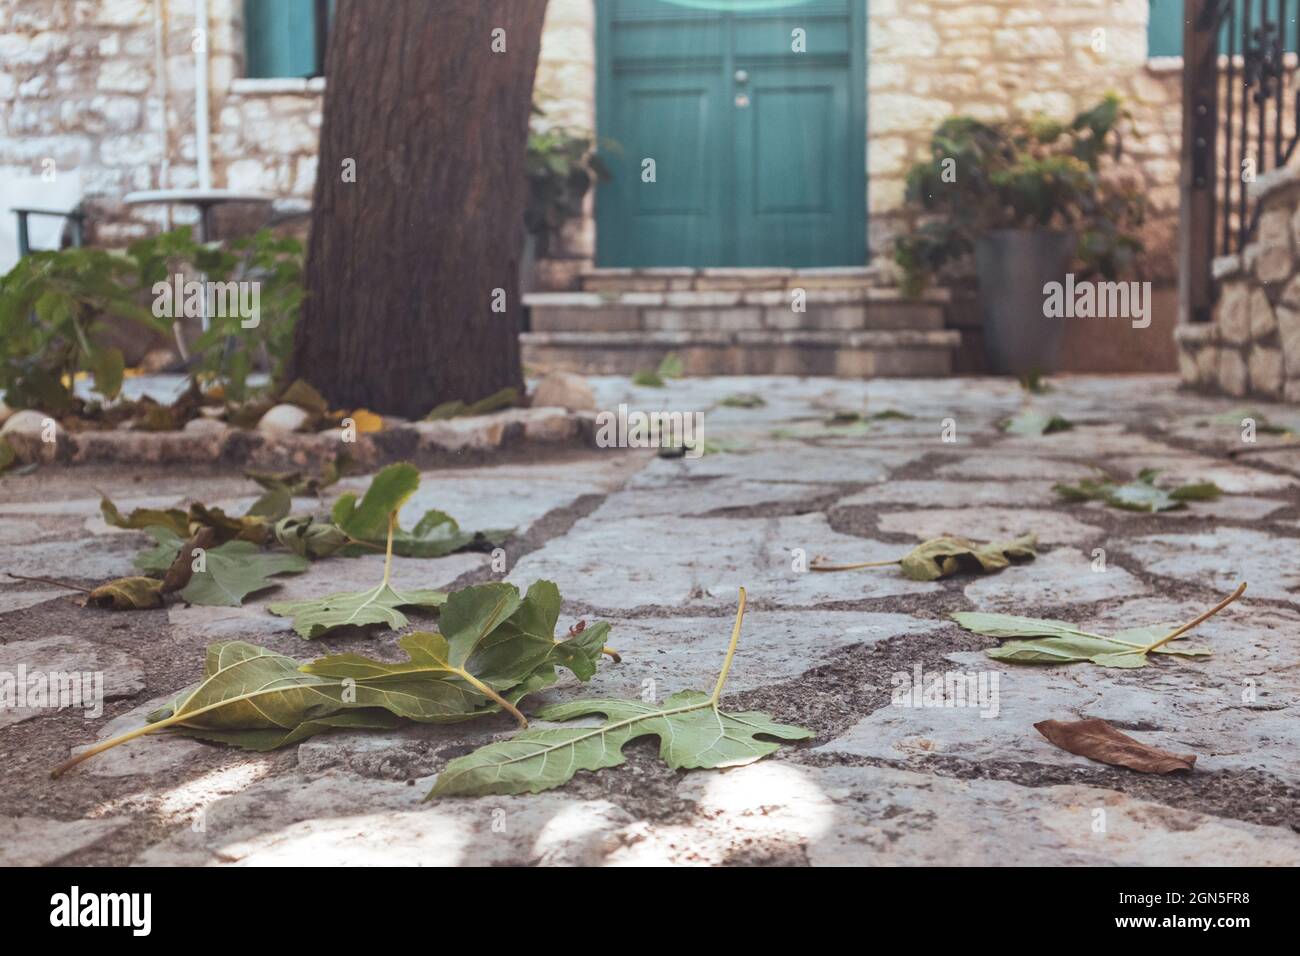 Les feuilles vertes se rapprochent du sol en pierre dans une cour grecque traditionnelle avec des murs en pierre et des volets bleus. Voyages d'été architecture d Banque D'Images